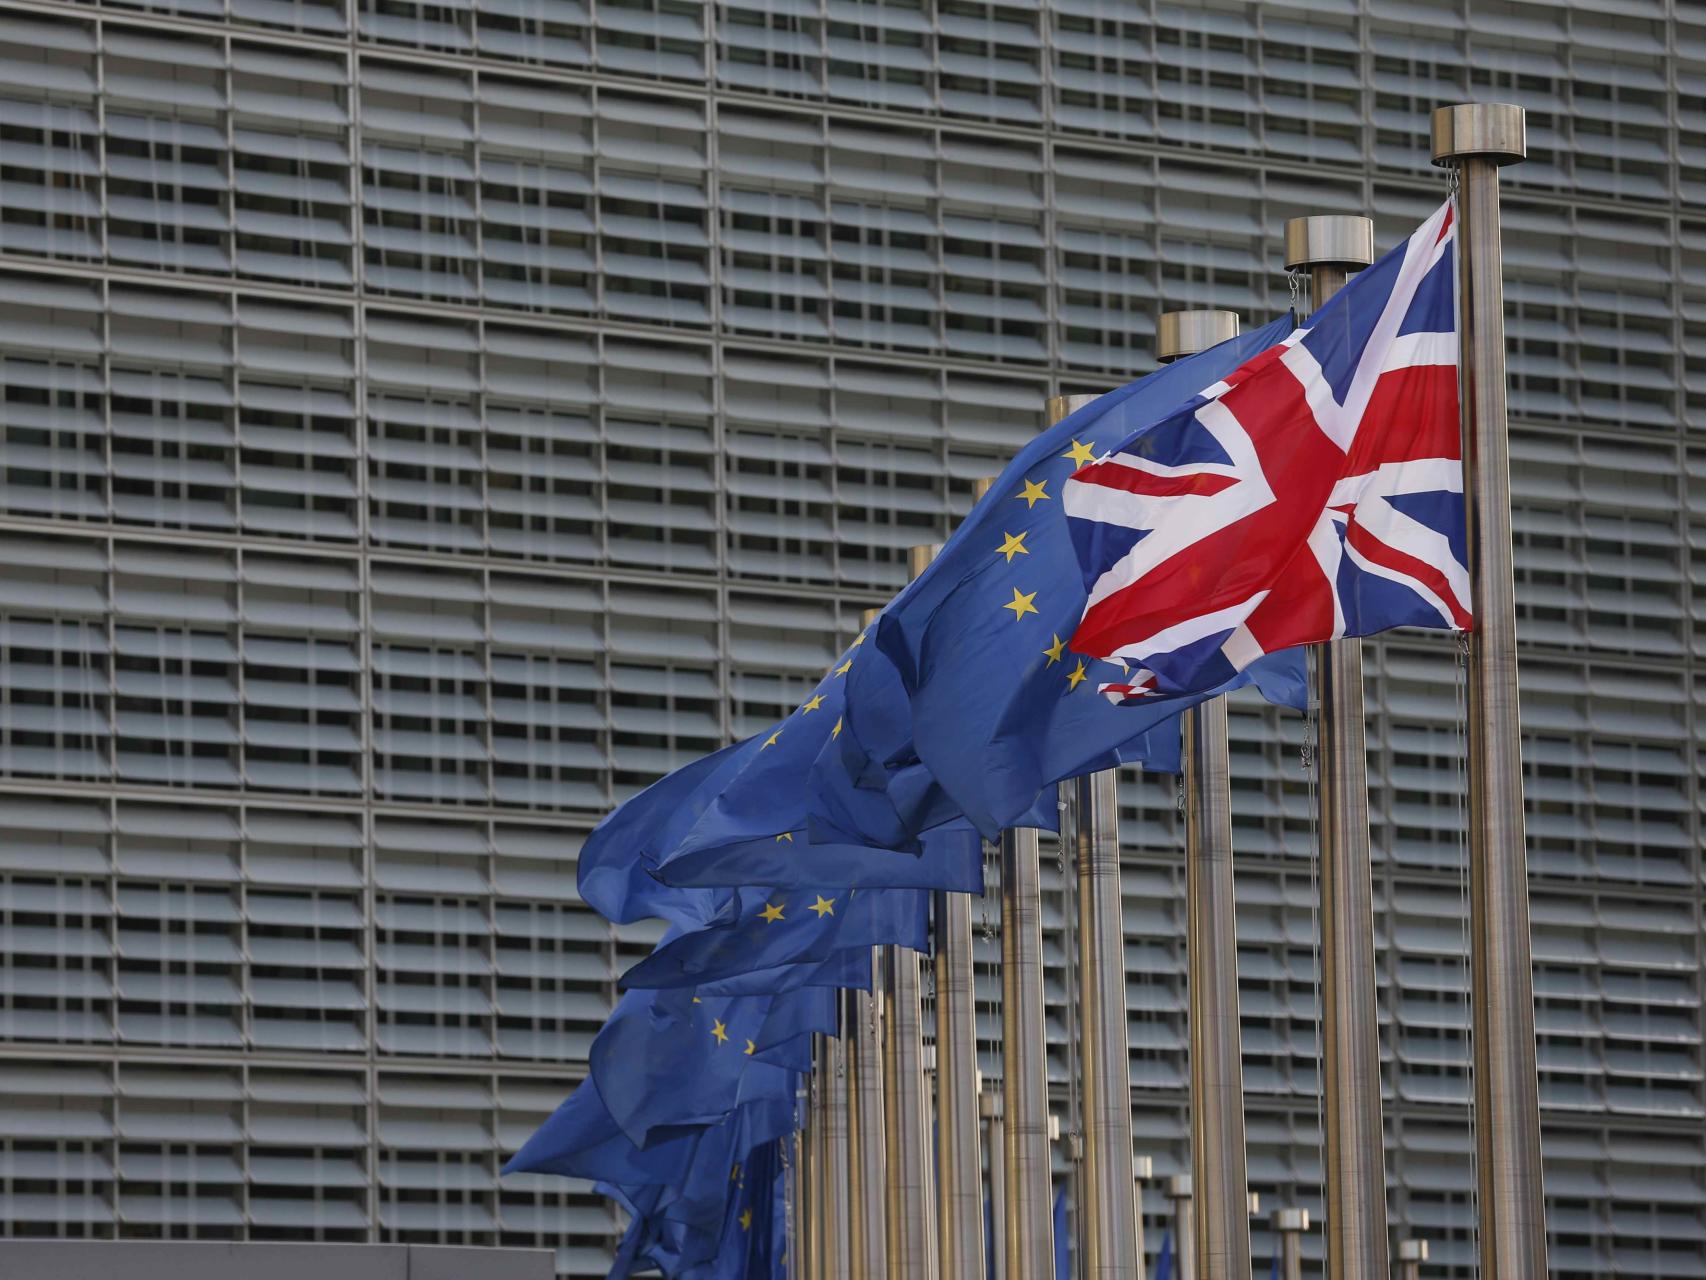 La bandera británica ondea junto a banderas europeas en la sede de la Comisión